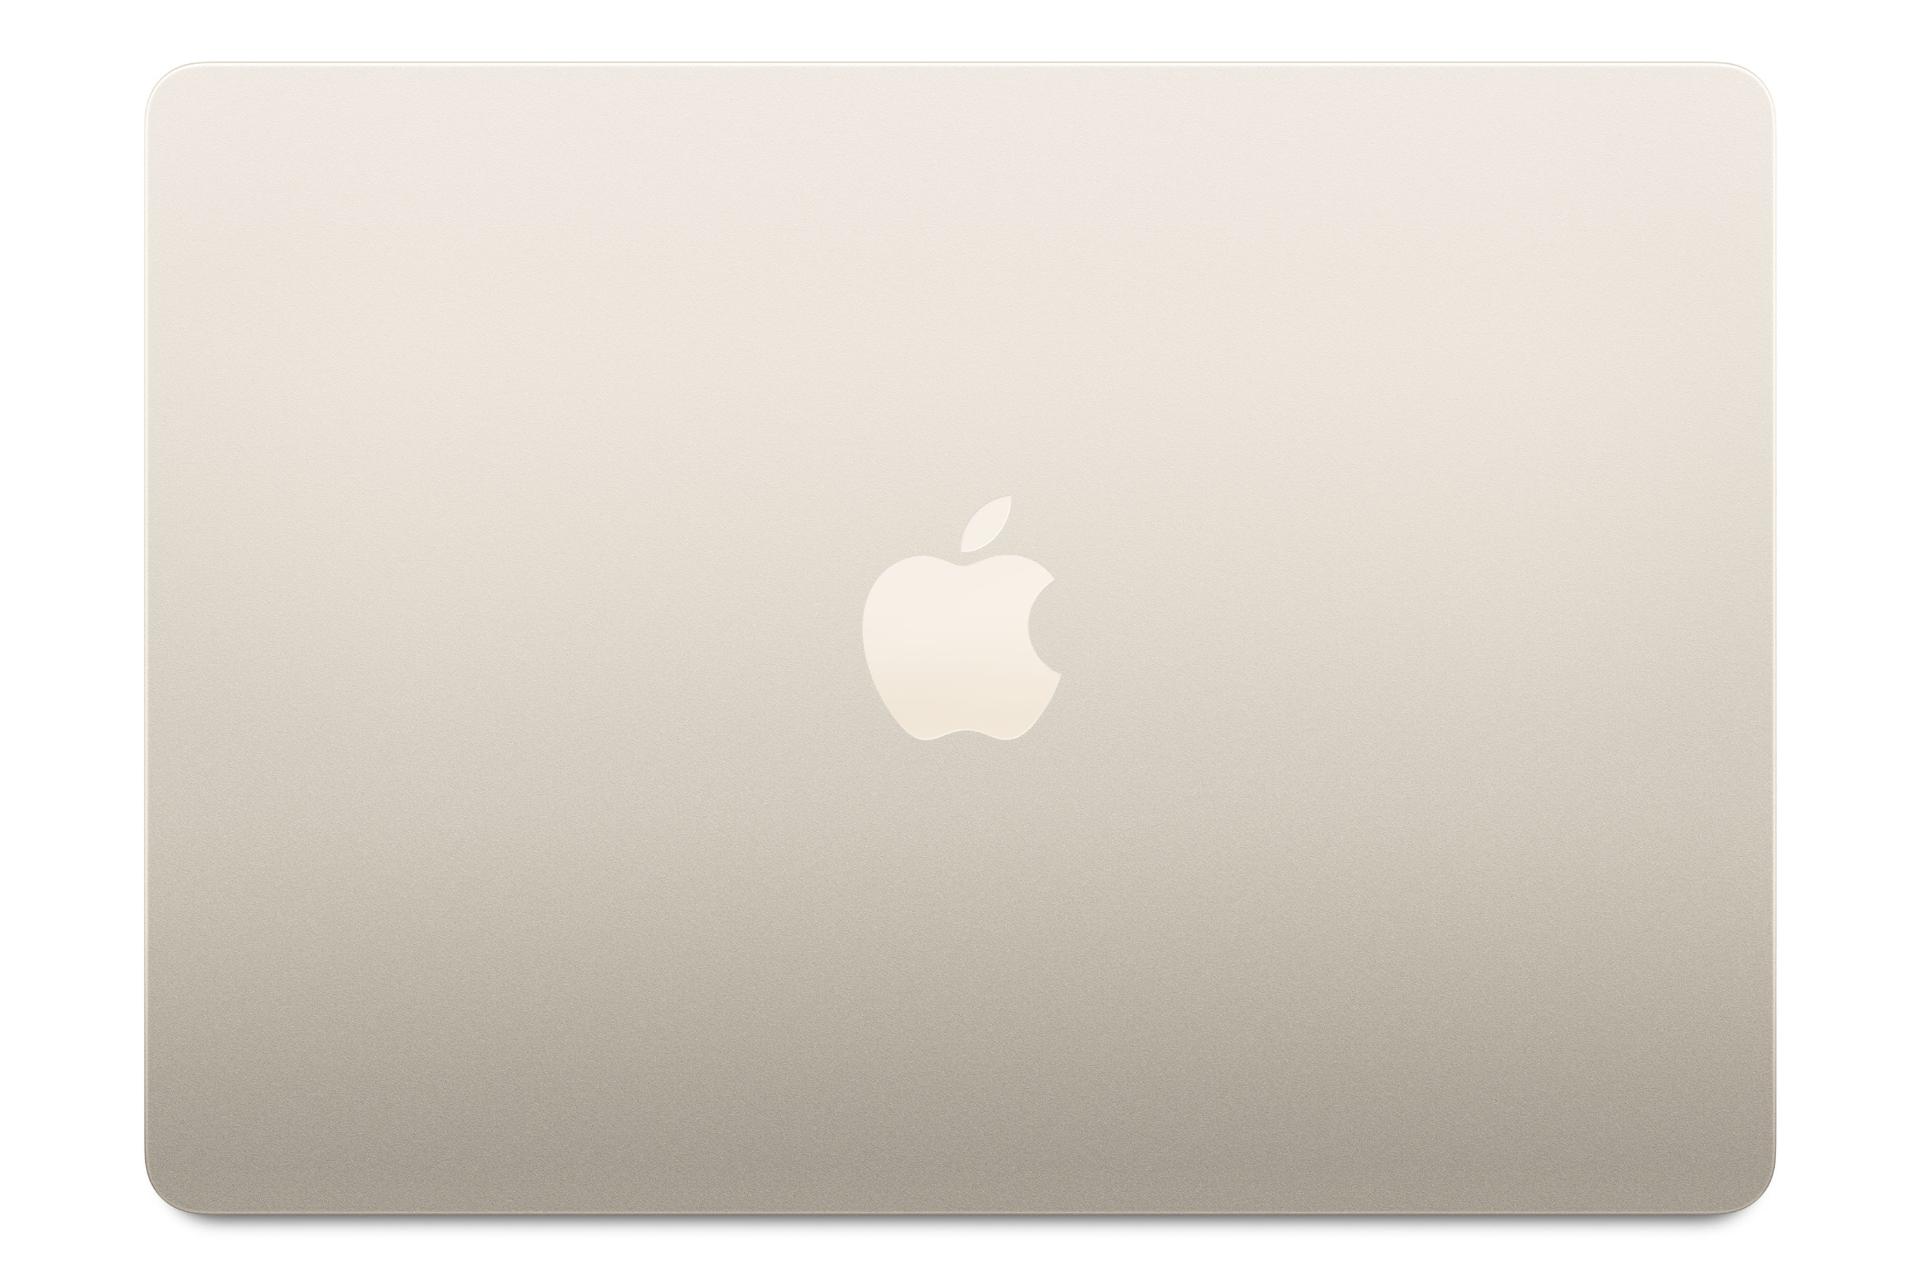 مرجع متخصصين ايران نماي بالا مك بوك اير 13 اينچي M3 اپل طلايي / Apple MacBook Air M3